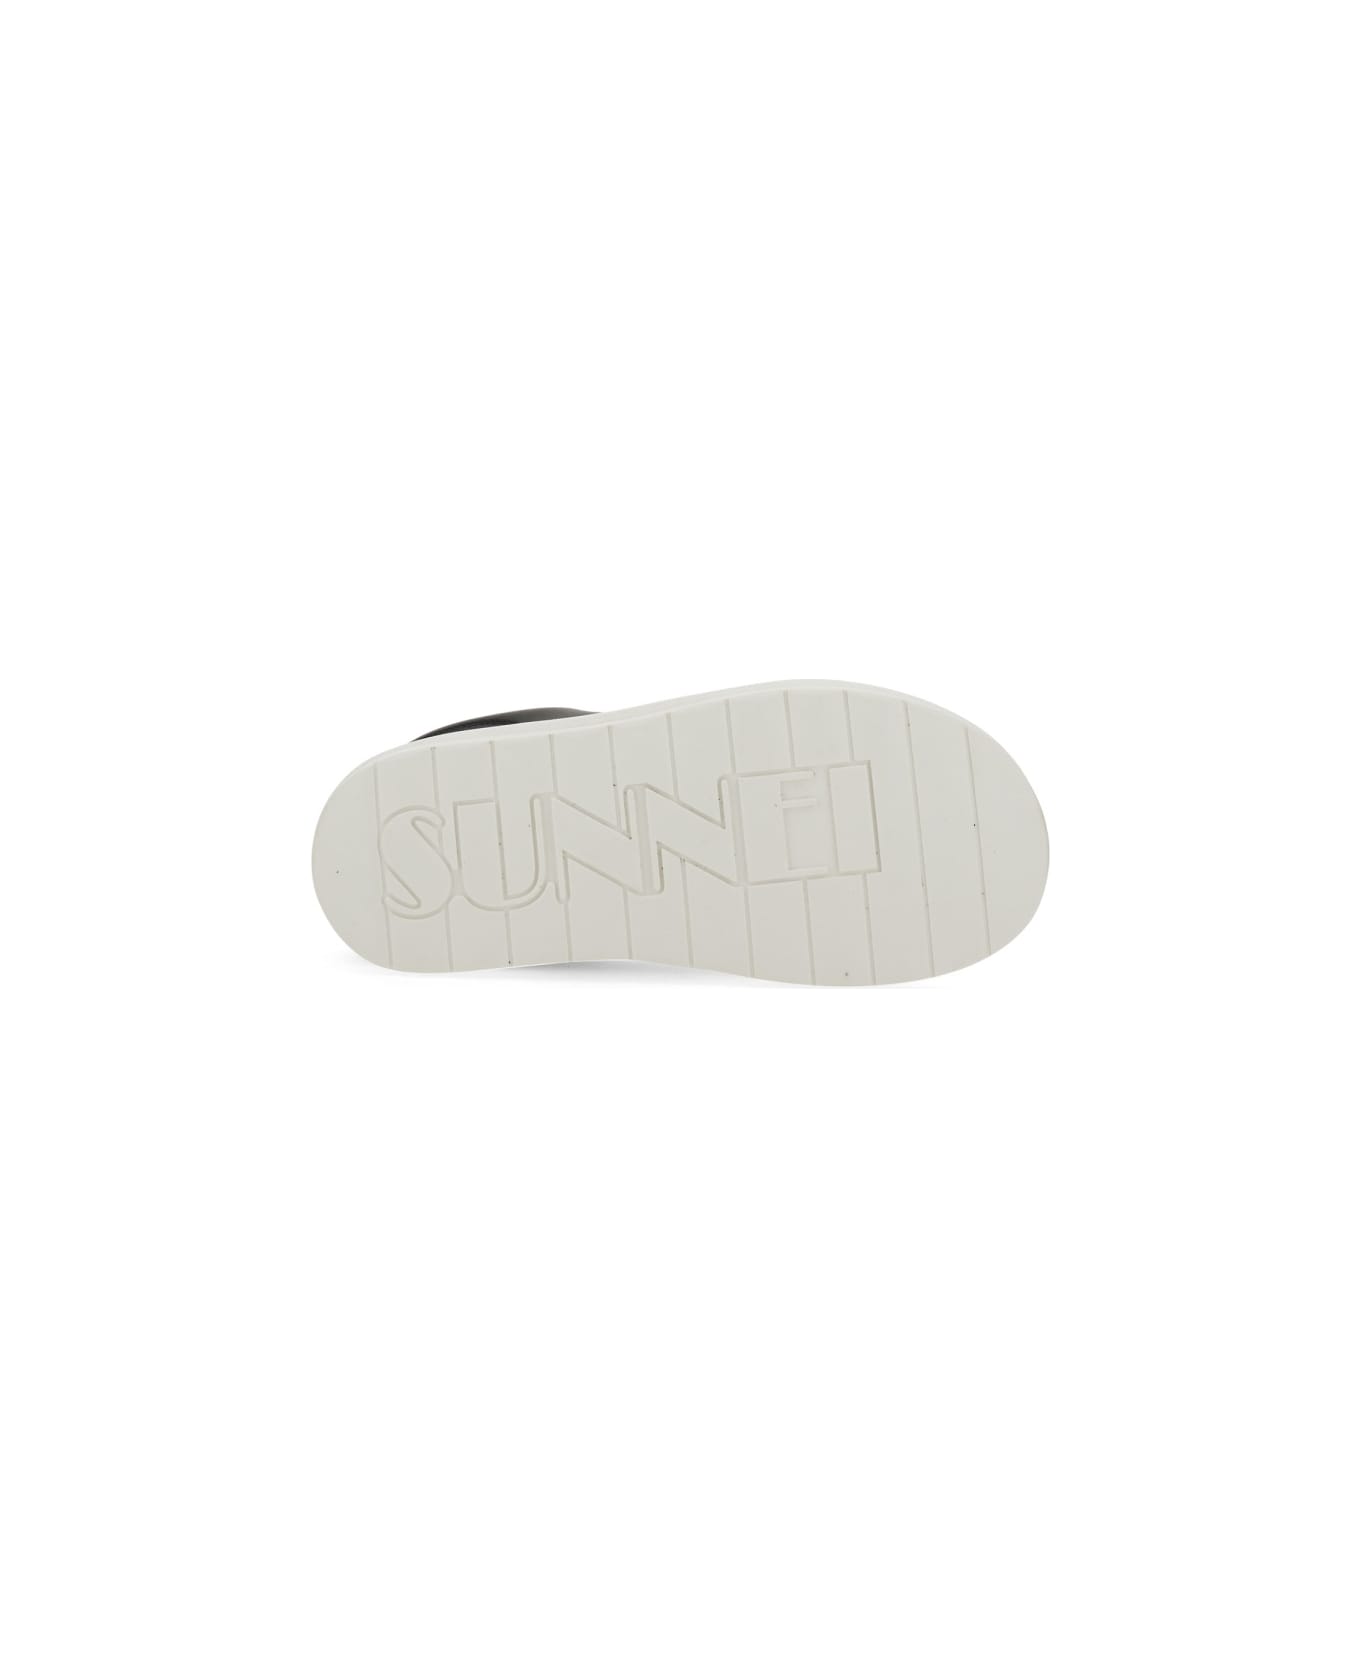 Sunnei Sneaker Dreamy - BLACK スニーカー